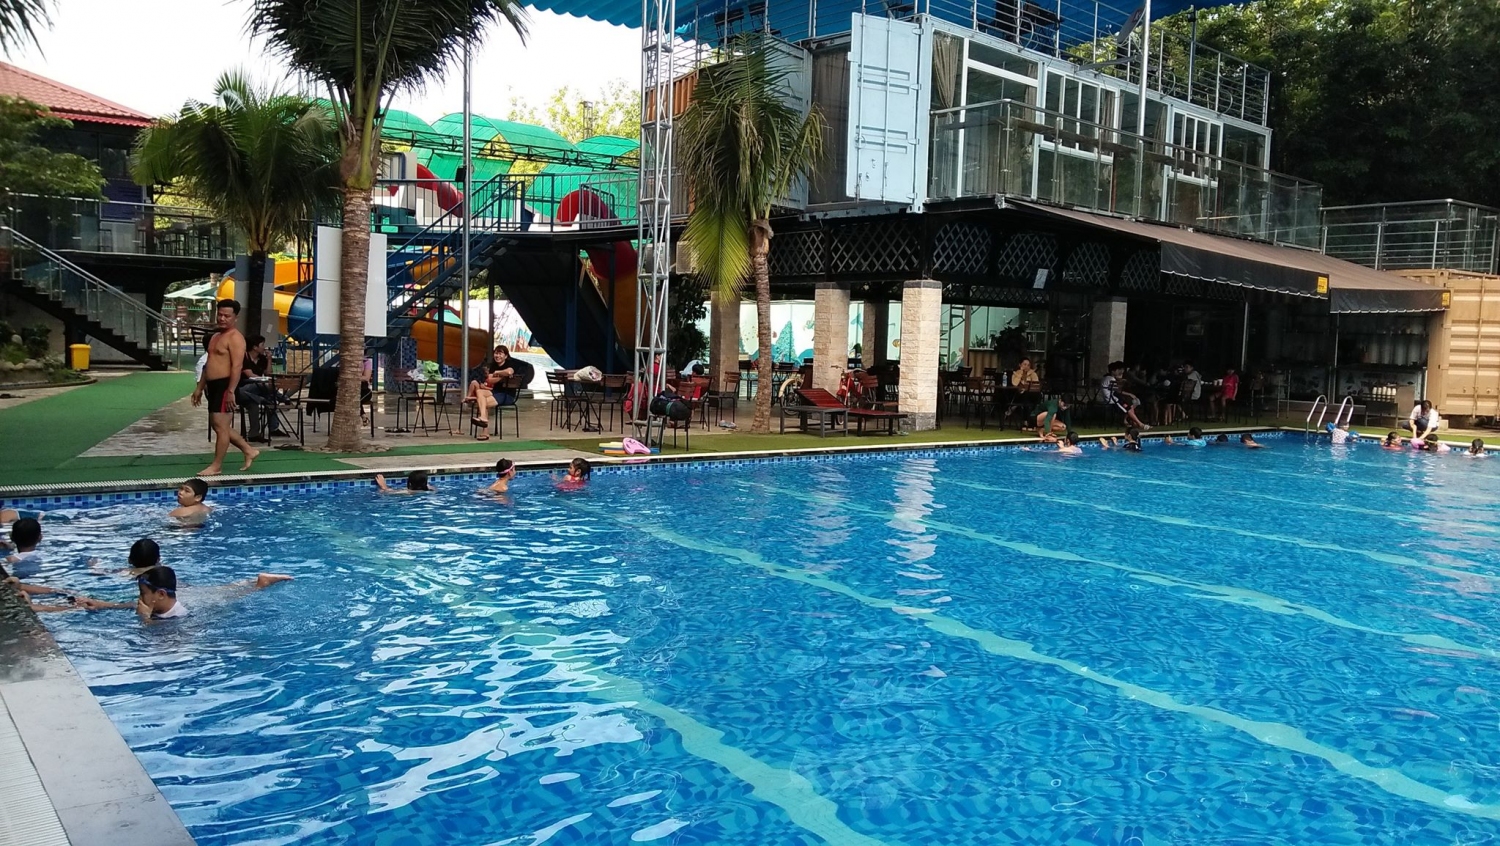 Các em học sinh được hướng dẫn học bơi tại hồ bơi YoRo, xã Minh Hưng, Chơn Thành